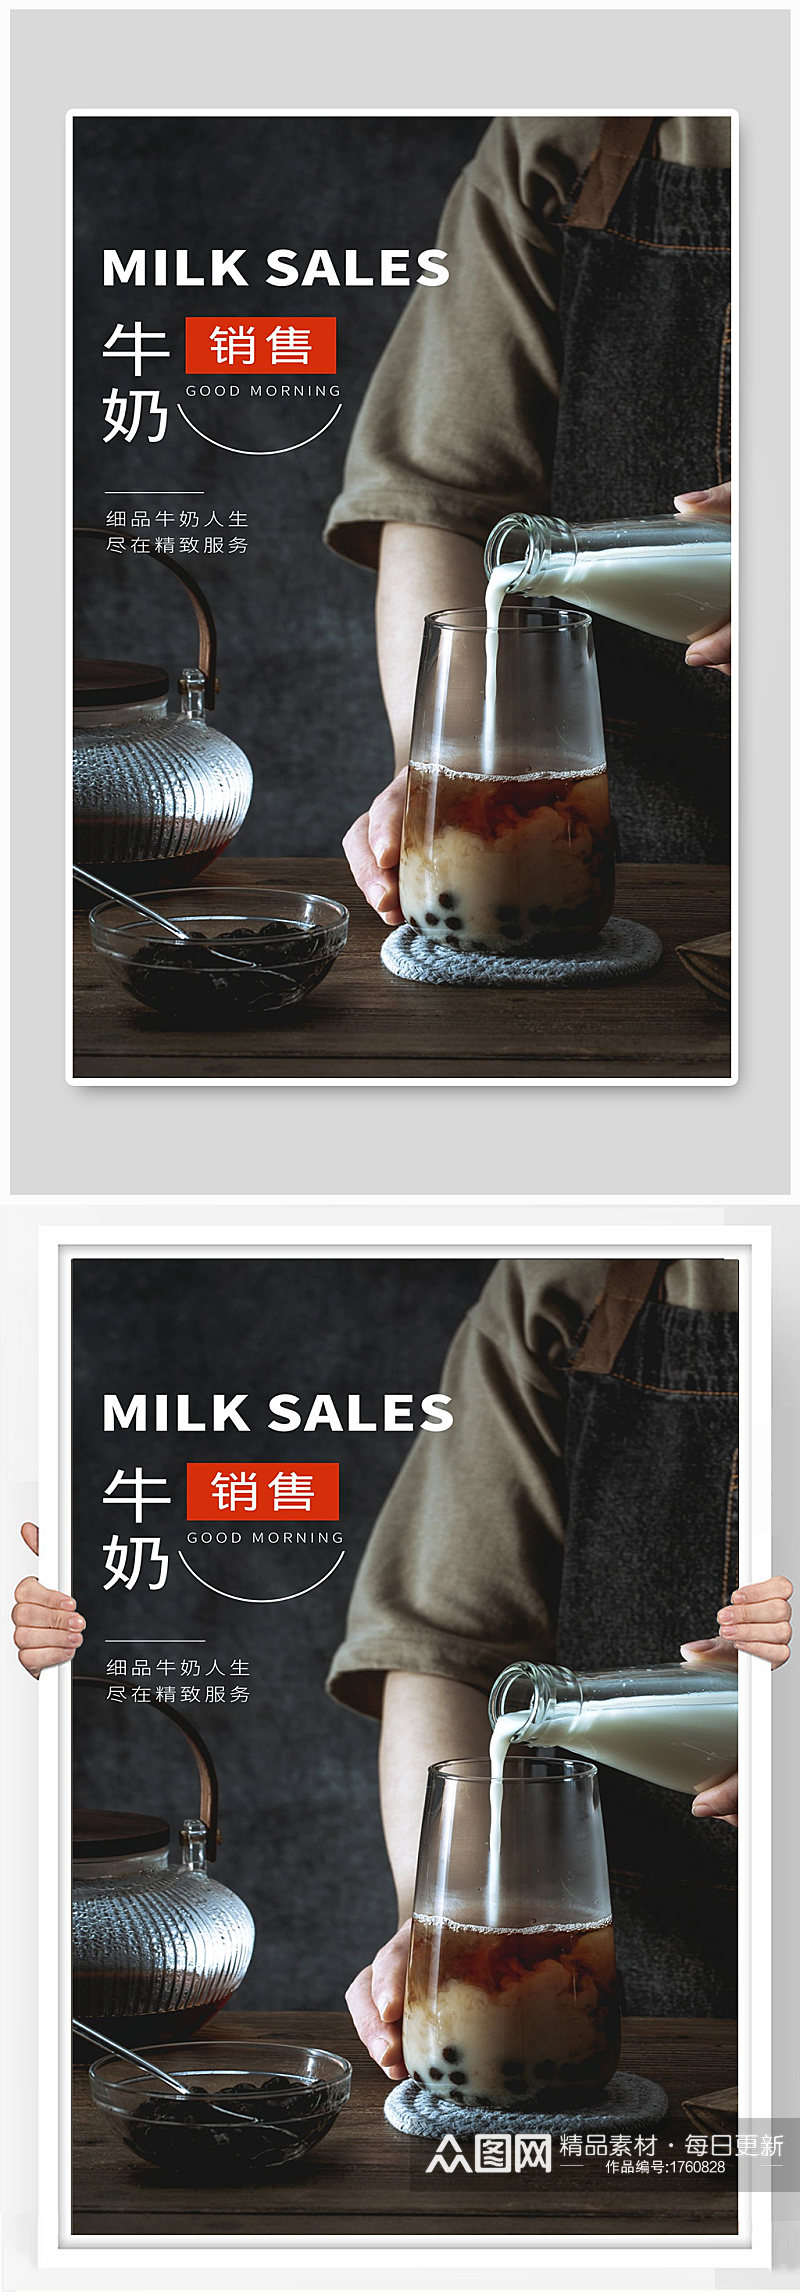 牛奶销售牛奶咖啡宣传海报制作素材